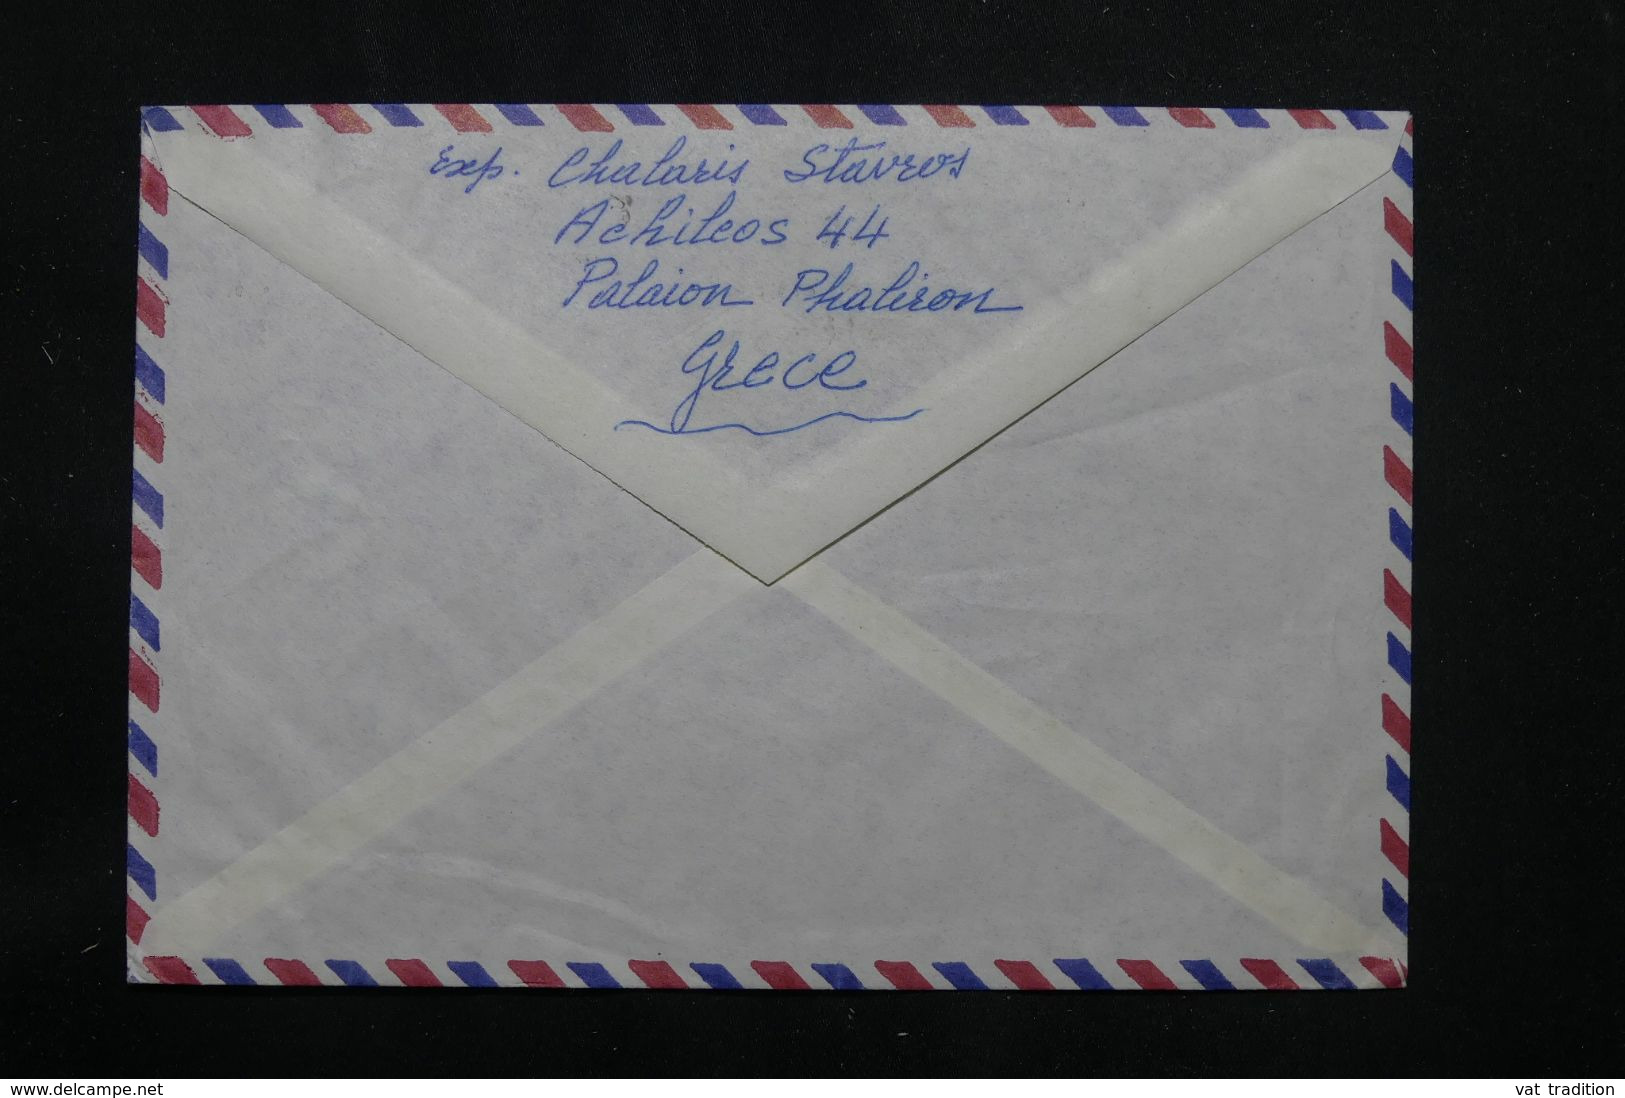 GRECE - Enveloppe De Athènes Pour Djibouti En 1970  - L 71835 - Lettres & Documents